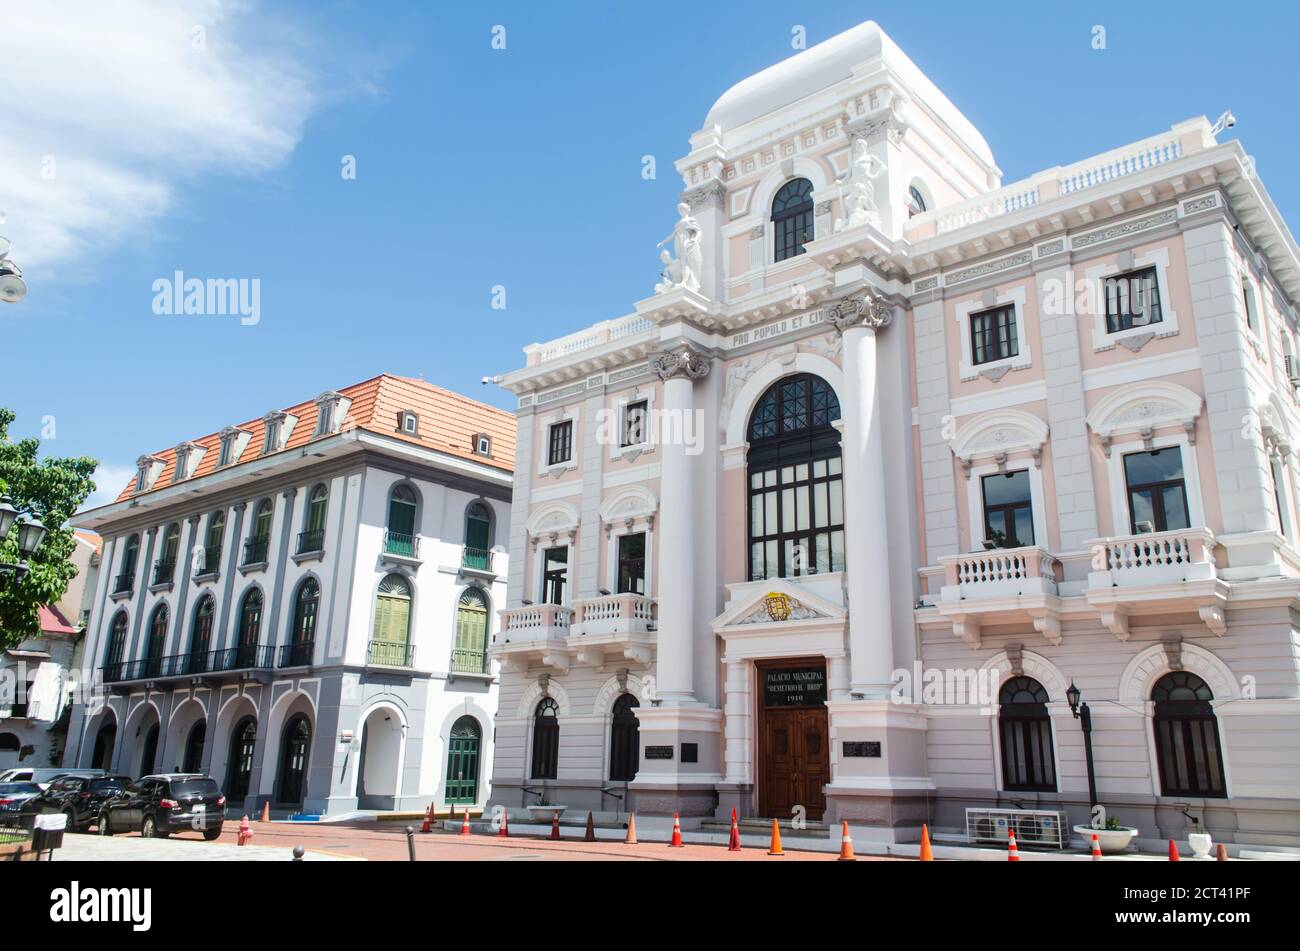 Deux bâtiments historiques de la vieille ville de Panama. Musée du canal de Panama peut être vu sur la gauche et sur la droite se dresse le Palais Municipal building. Banque D'Images